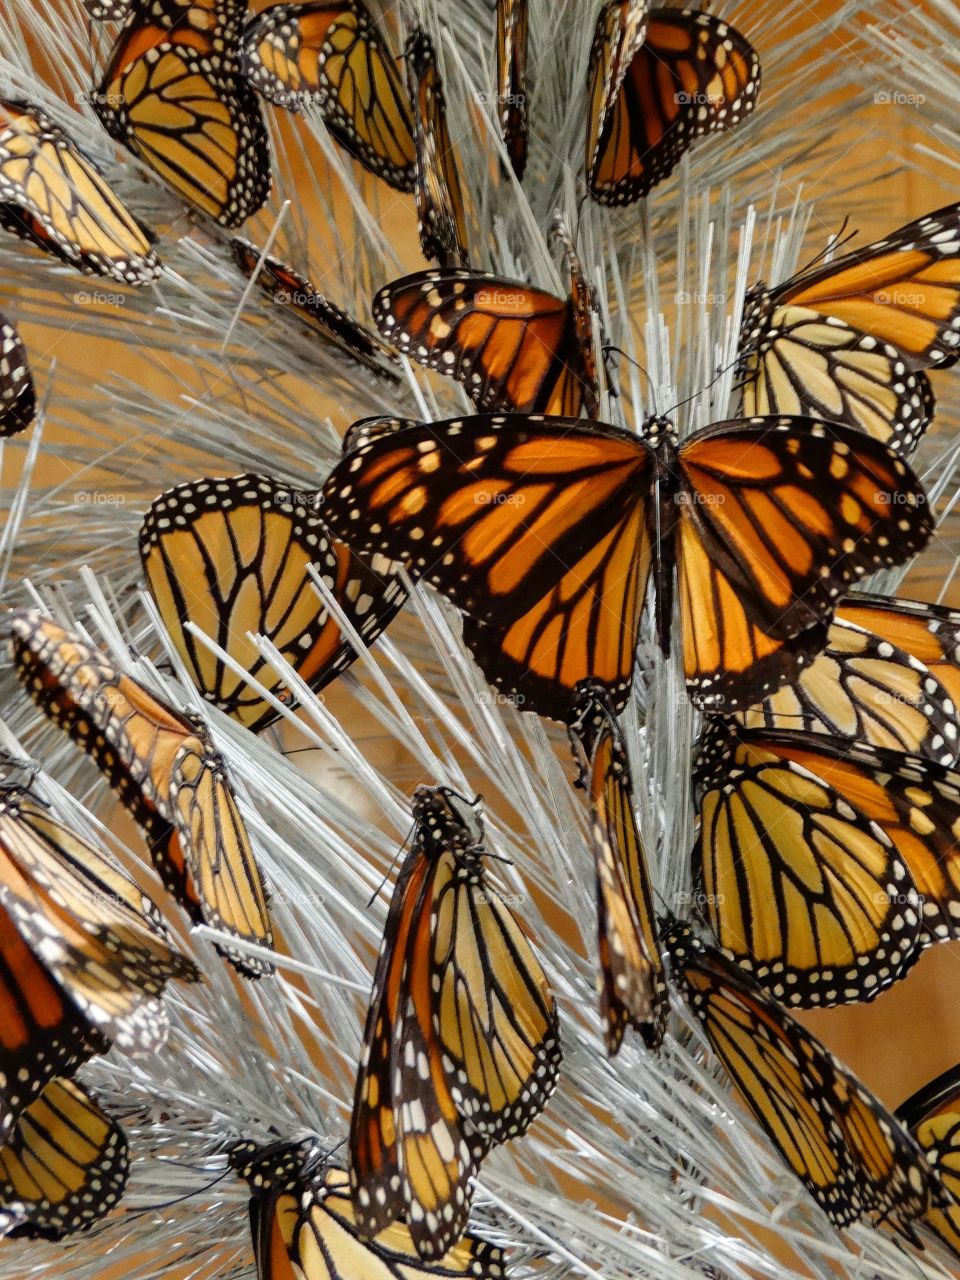 Monarch Butterflies
